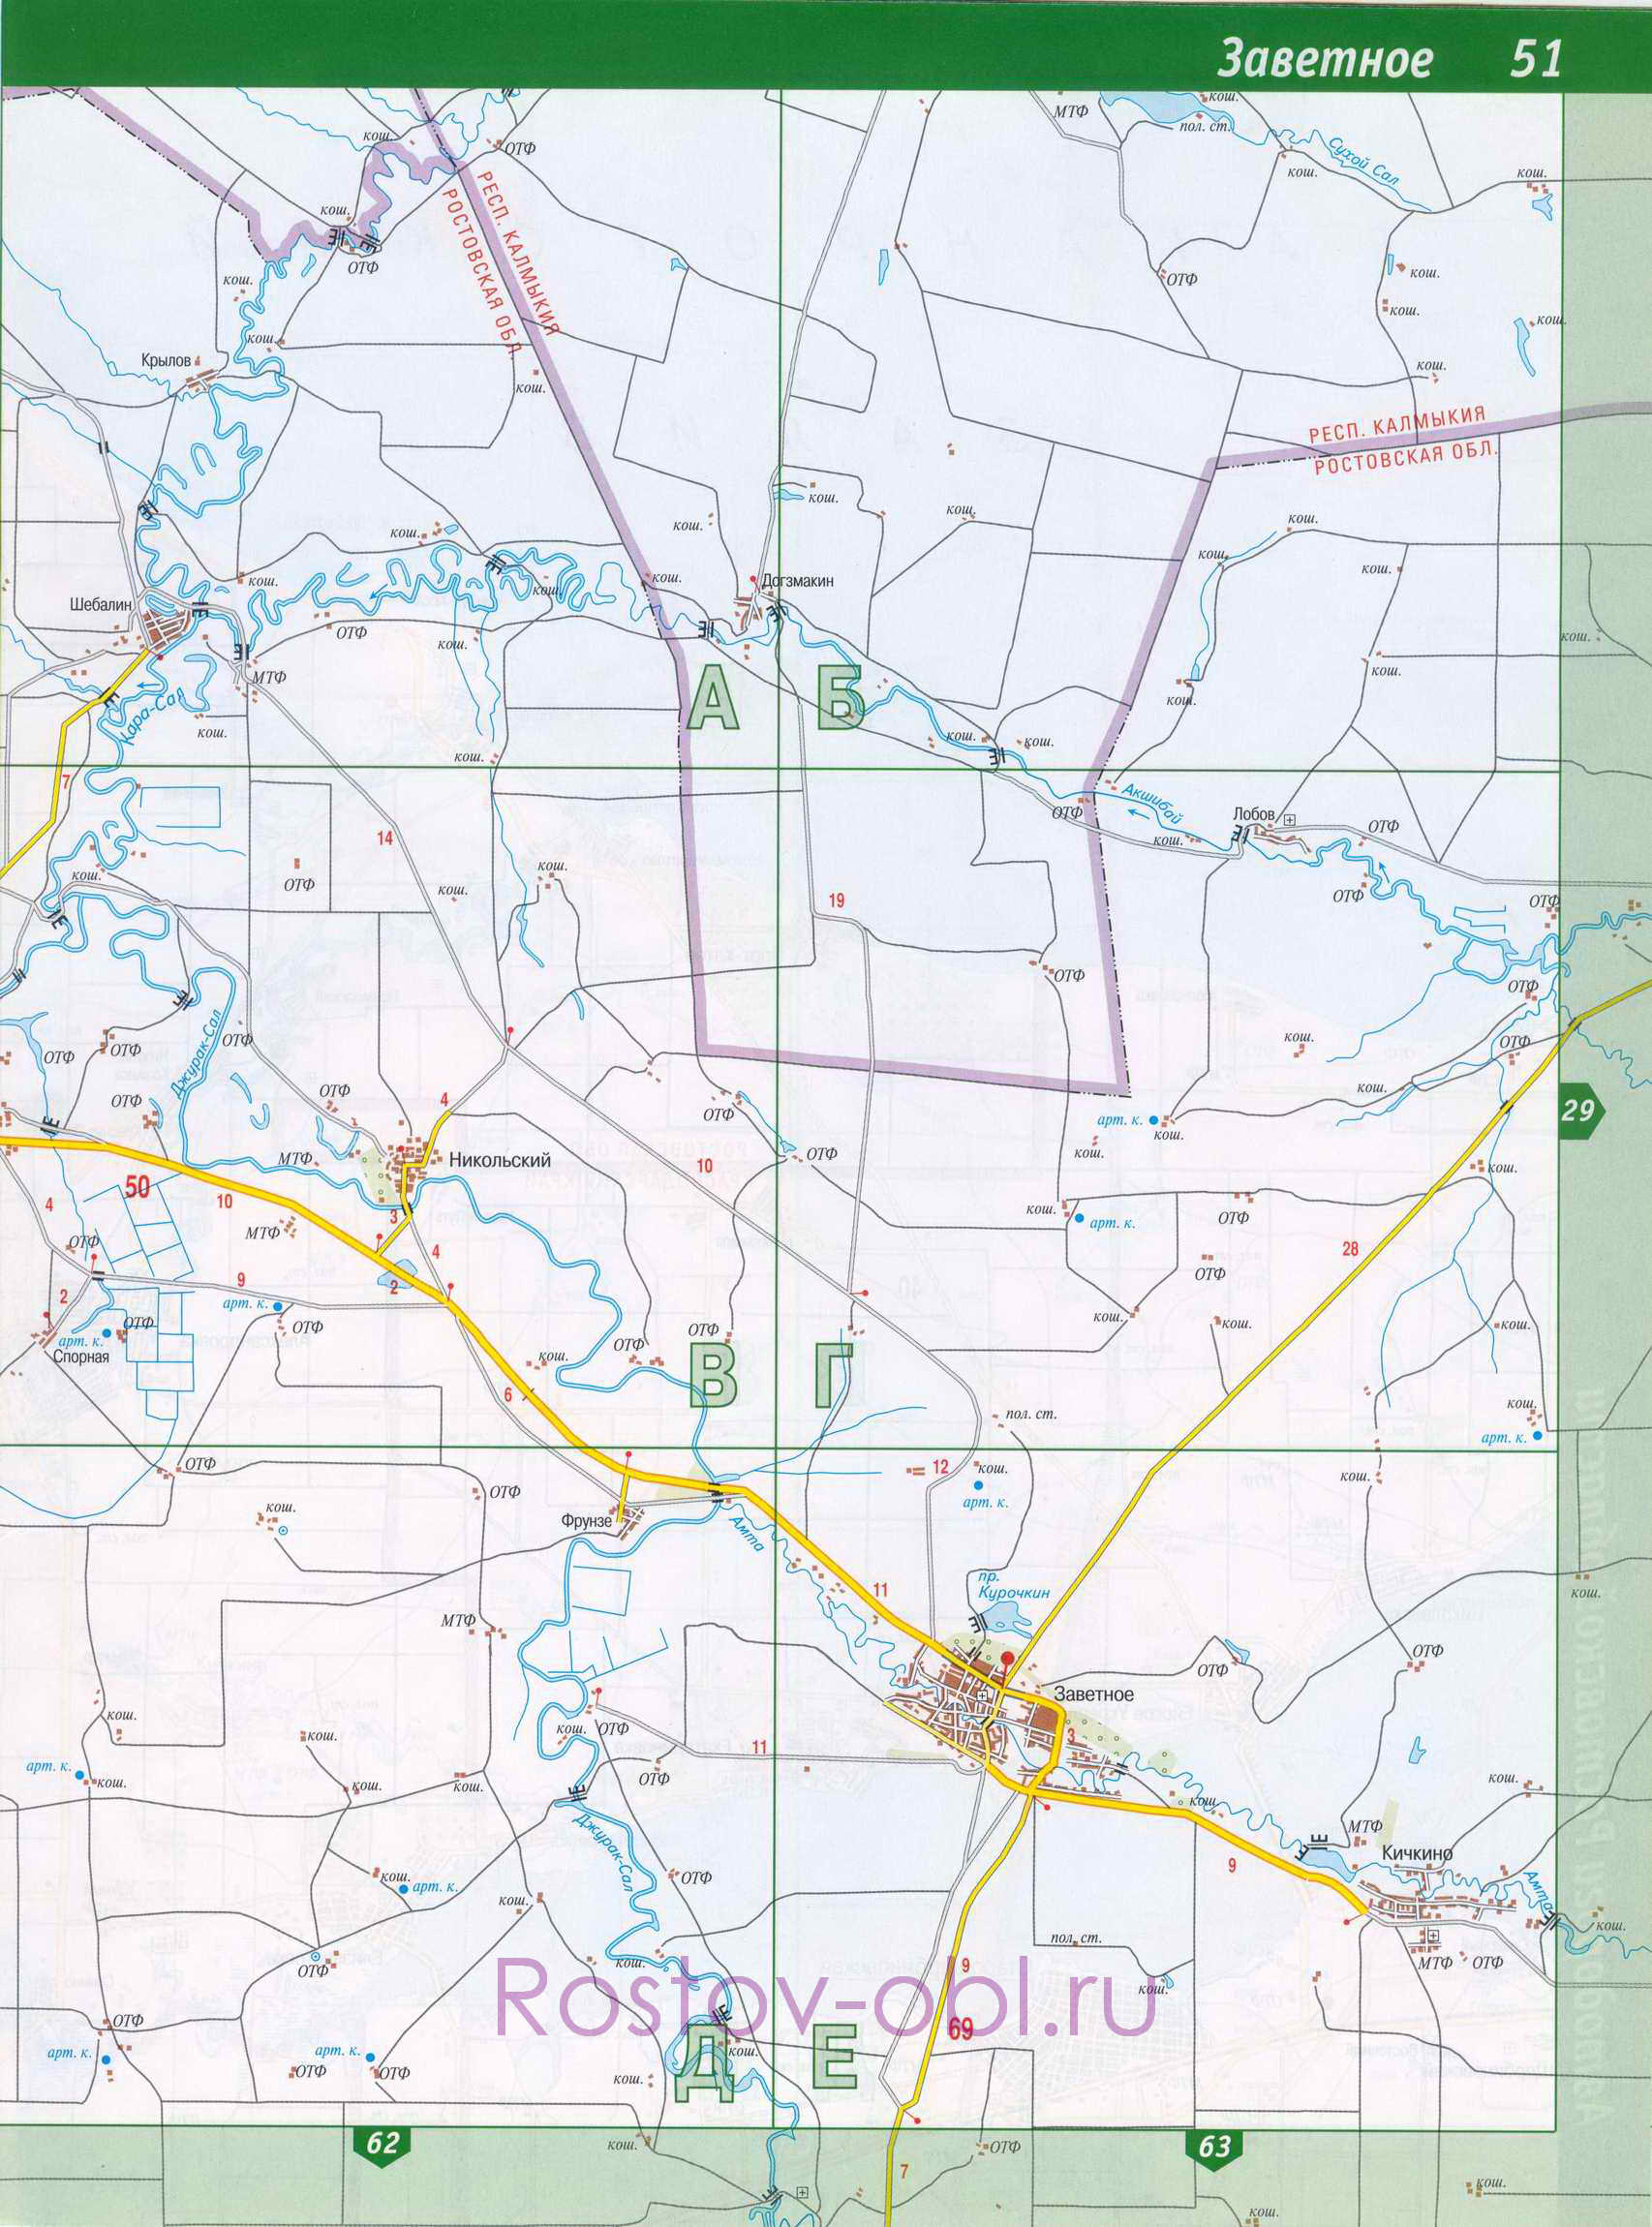 Карта Заветинского района Ростовской области. заветинский район на крупномасштабной карте, A0 - 